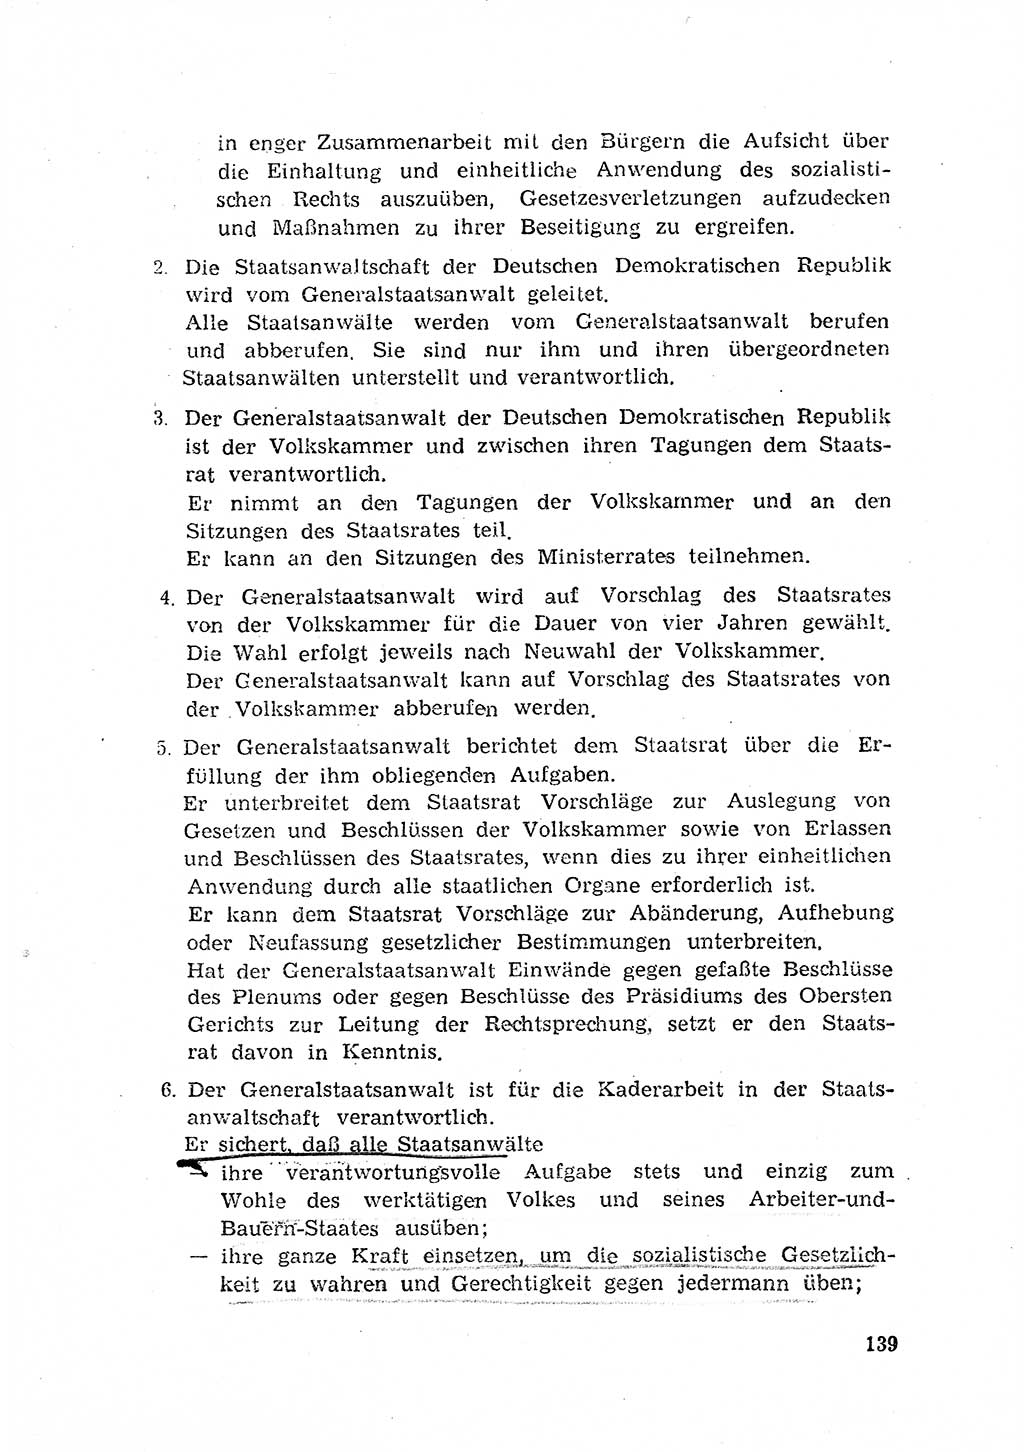 Rechtspflegeerlaß [Deutsche Demokratische Republik (DDR)] 1963, Seite 139 (R.-Pfl.-Erl. DDR 1963, S. 139)